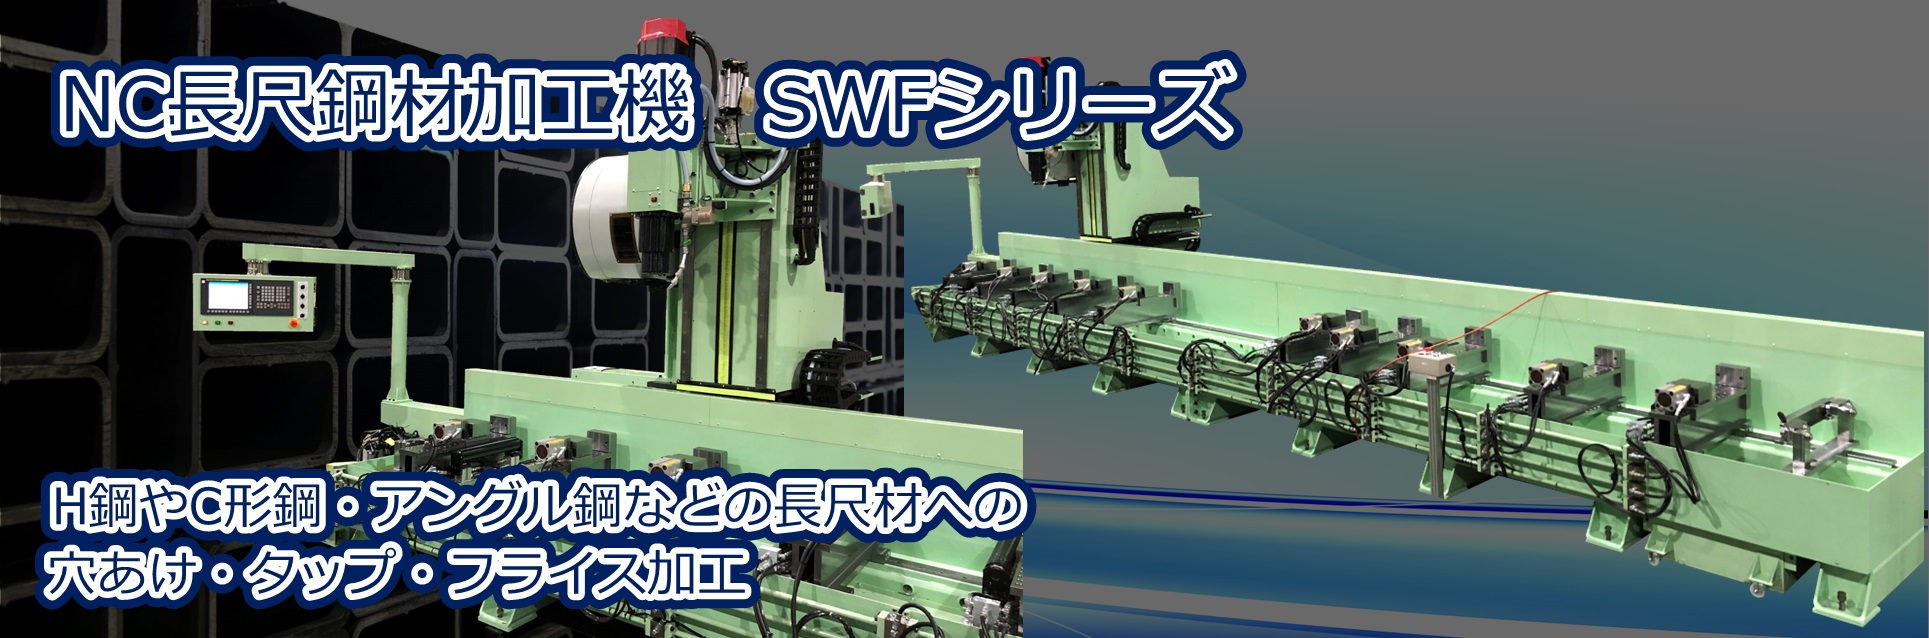 長尺鉄鋼材加工機・住宅用長尺鋼材加工機「SWFシリーズ」